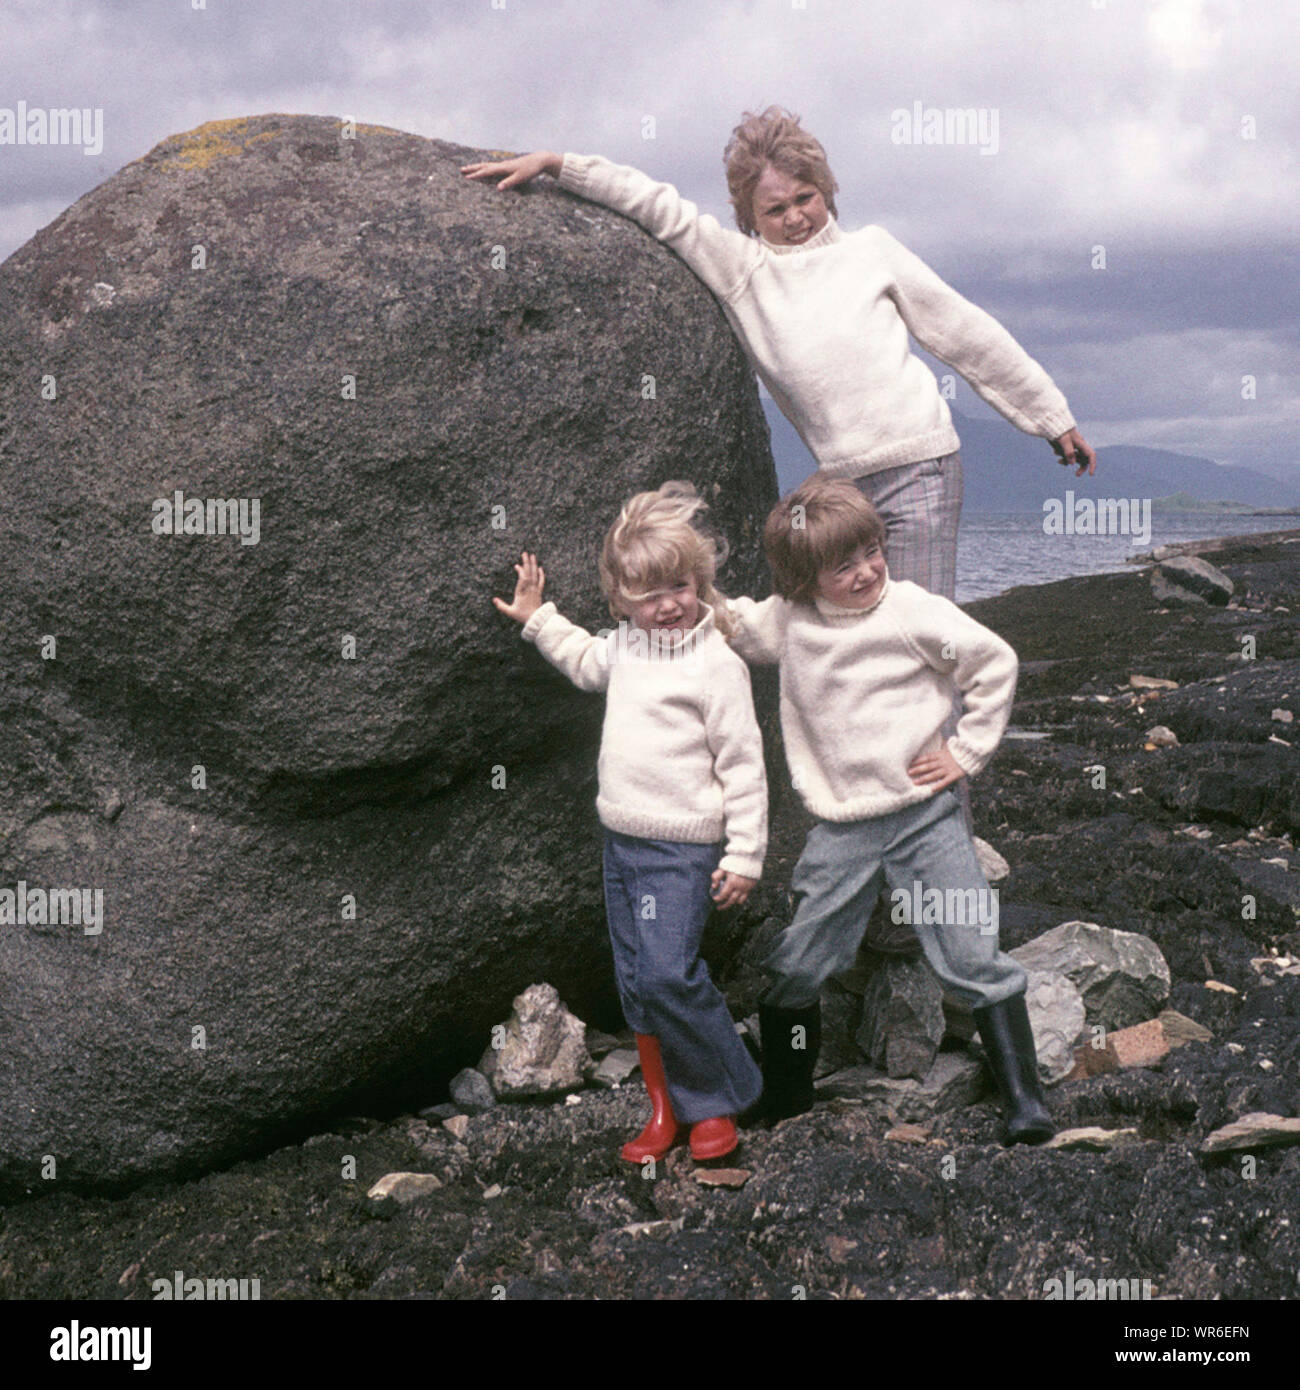 Historique archive 1970s modèle sorti famille en vacances en Ecosse trois enfants de la même posture de famille portant 70s assorti Aran mode pull essayer de pousser Boulder à côté de froid venteux loch comme nous étions dans Scottish Highlands Royaume-Uni Banque D'Images